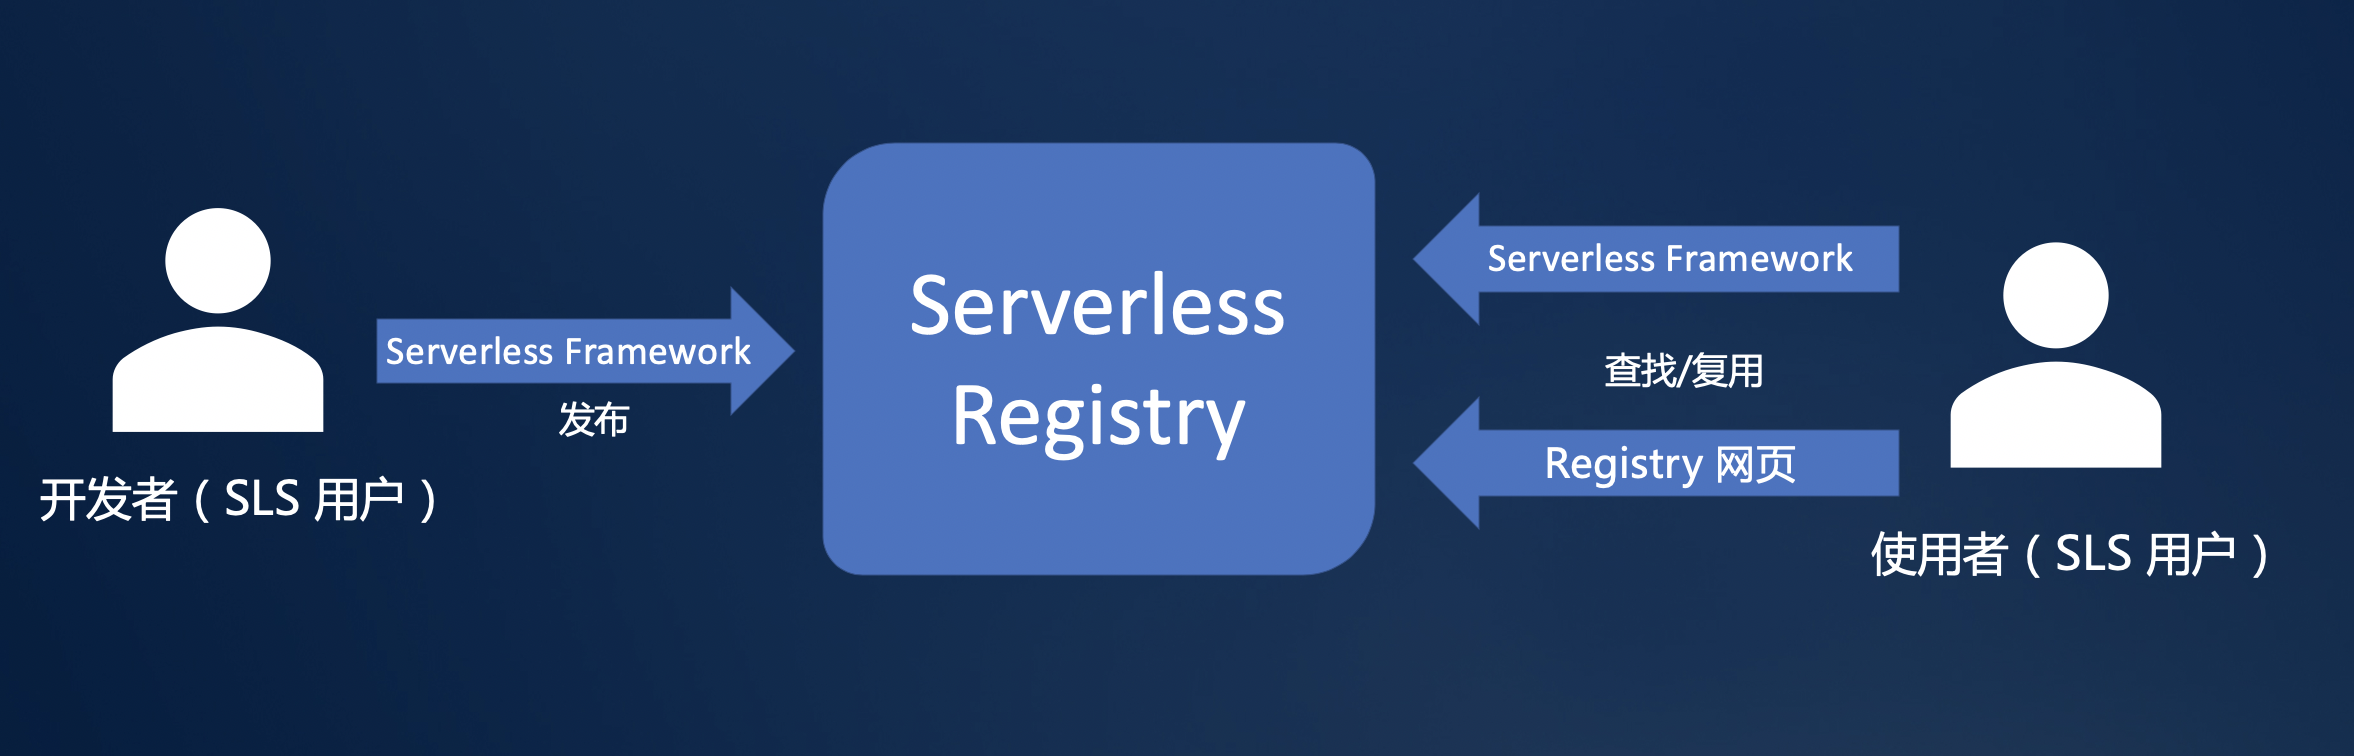 如何进行Serverless Registry设计解读与实战